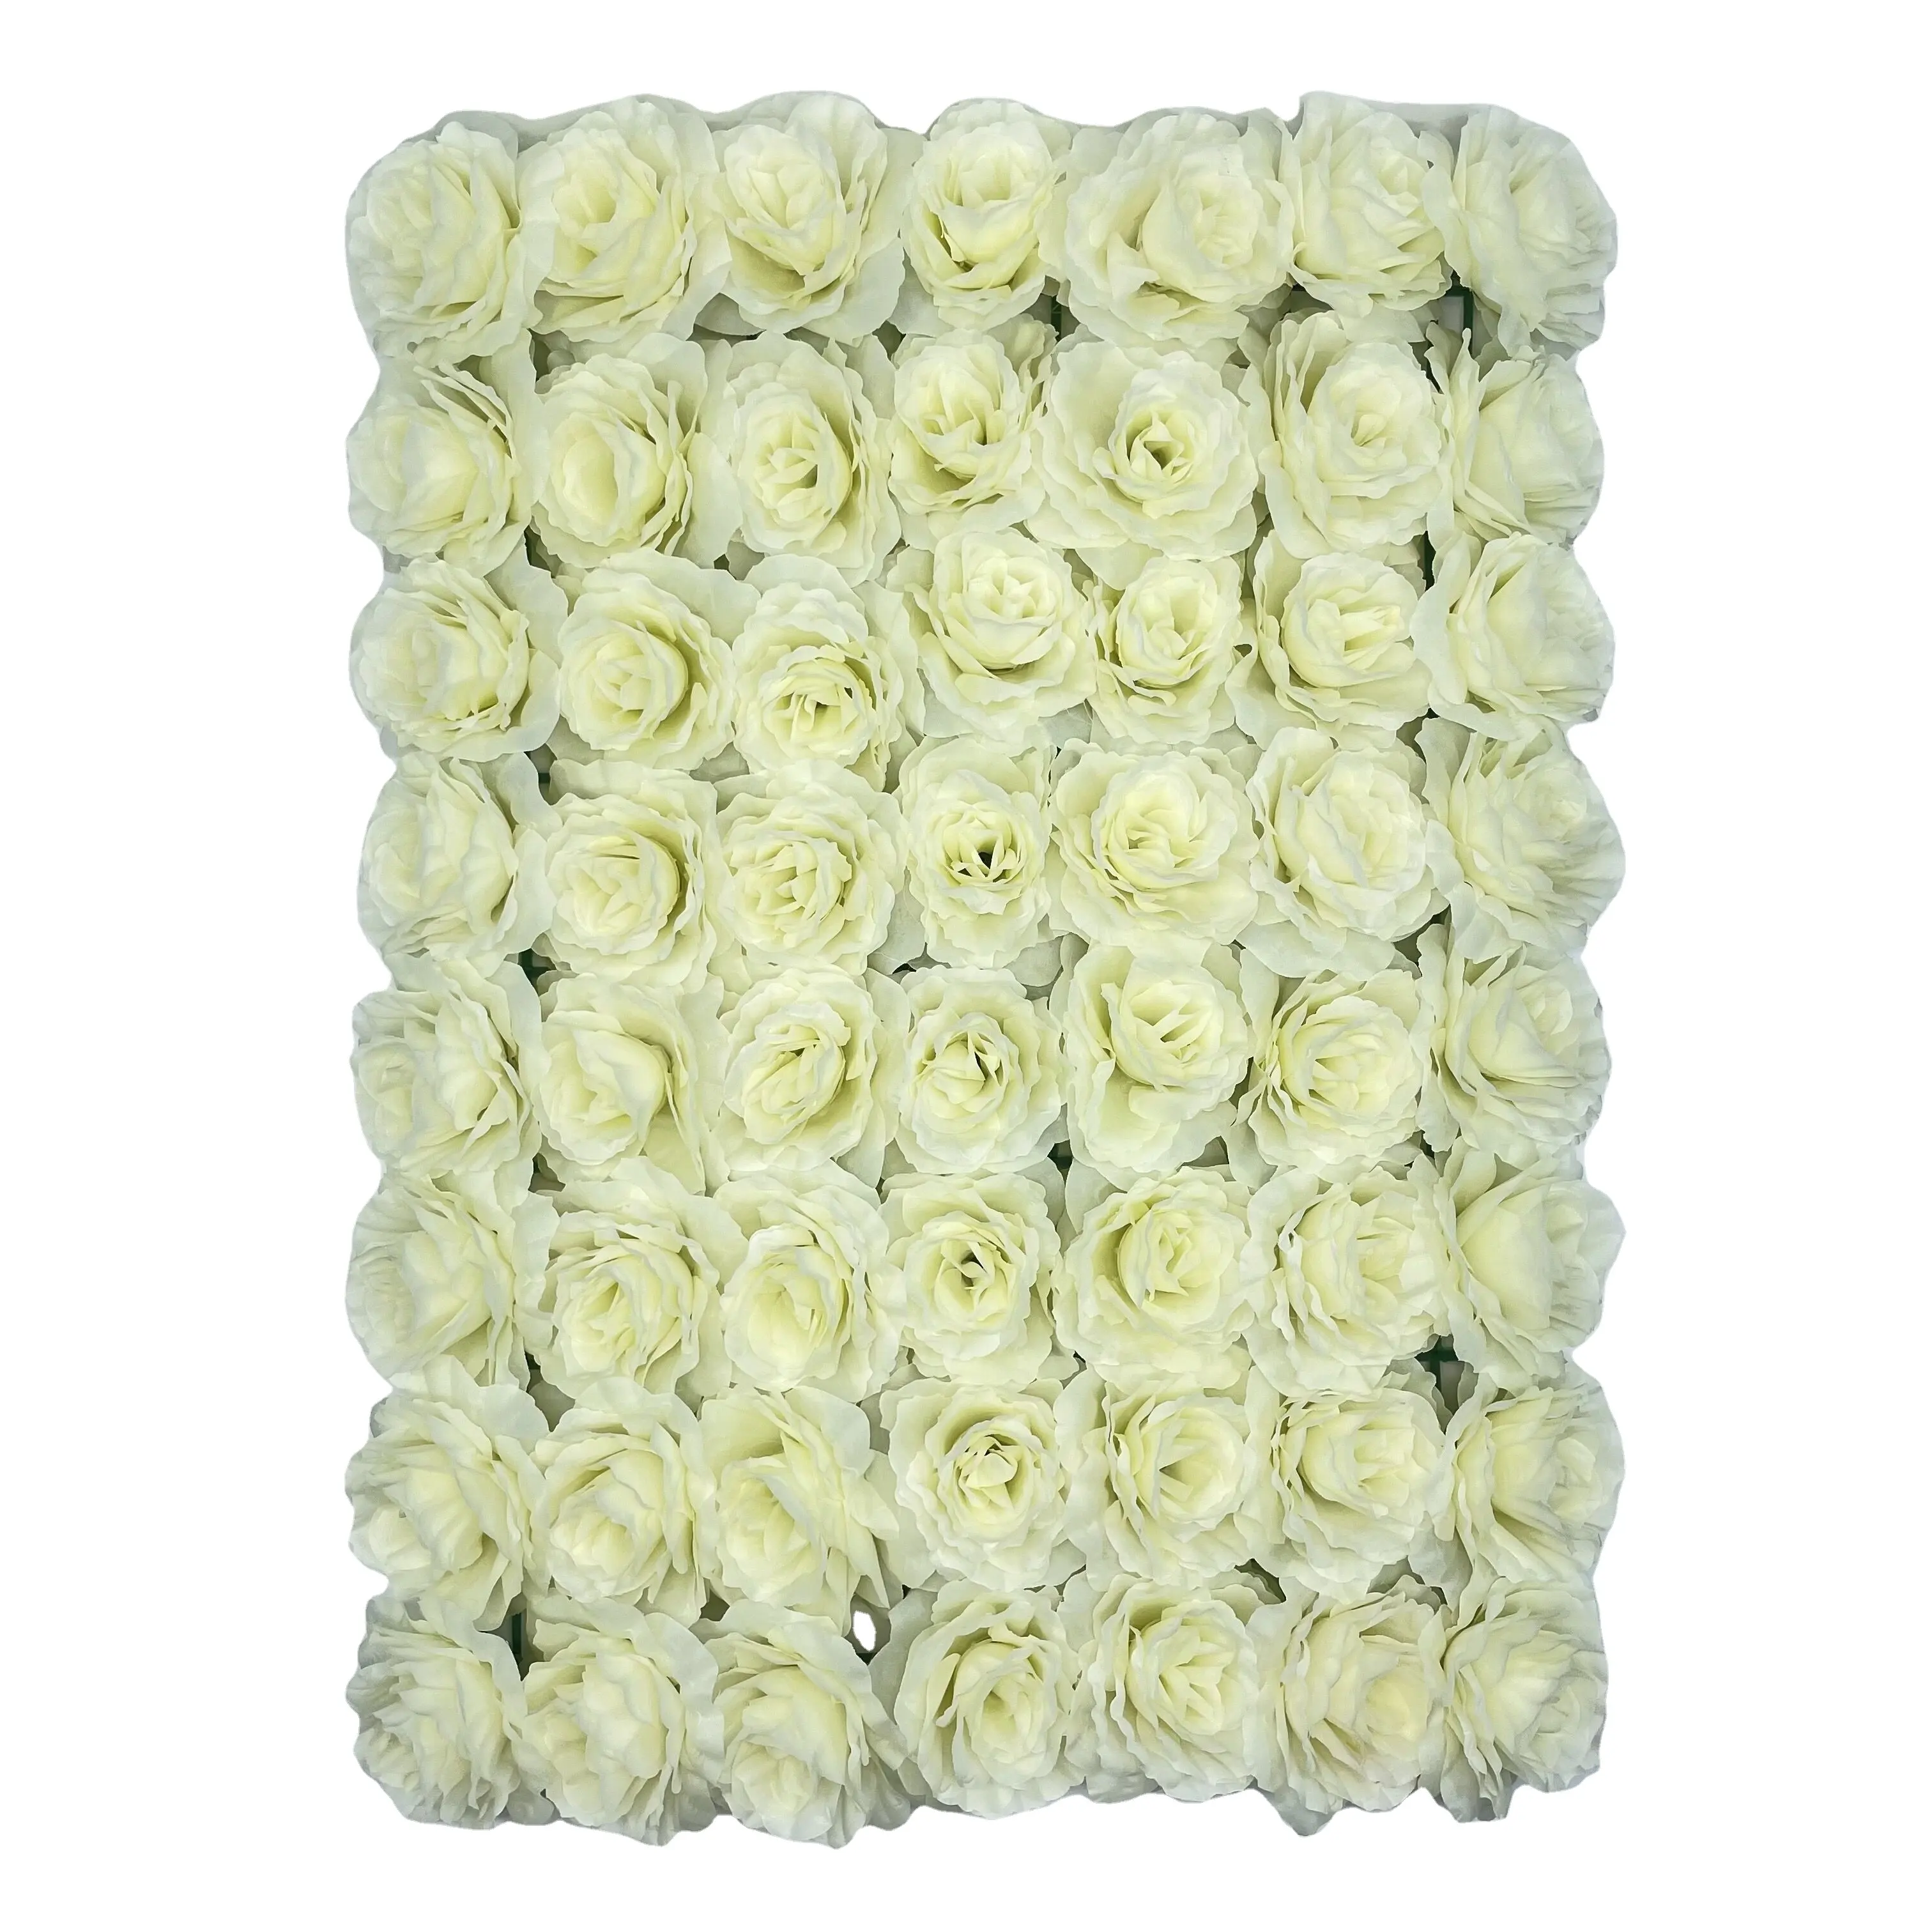 Decoração de festa artística de flores artificiais, parede quadrada, branca, rosa, flor artificial, design profissional, DFK0005-2